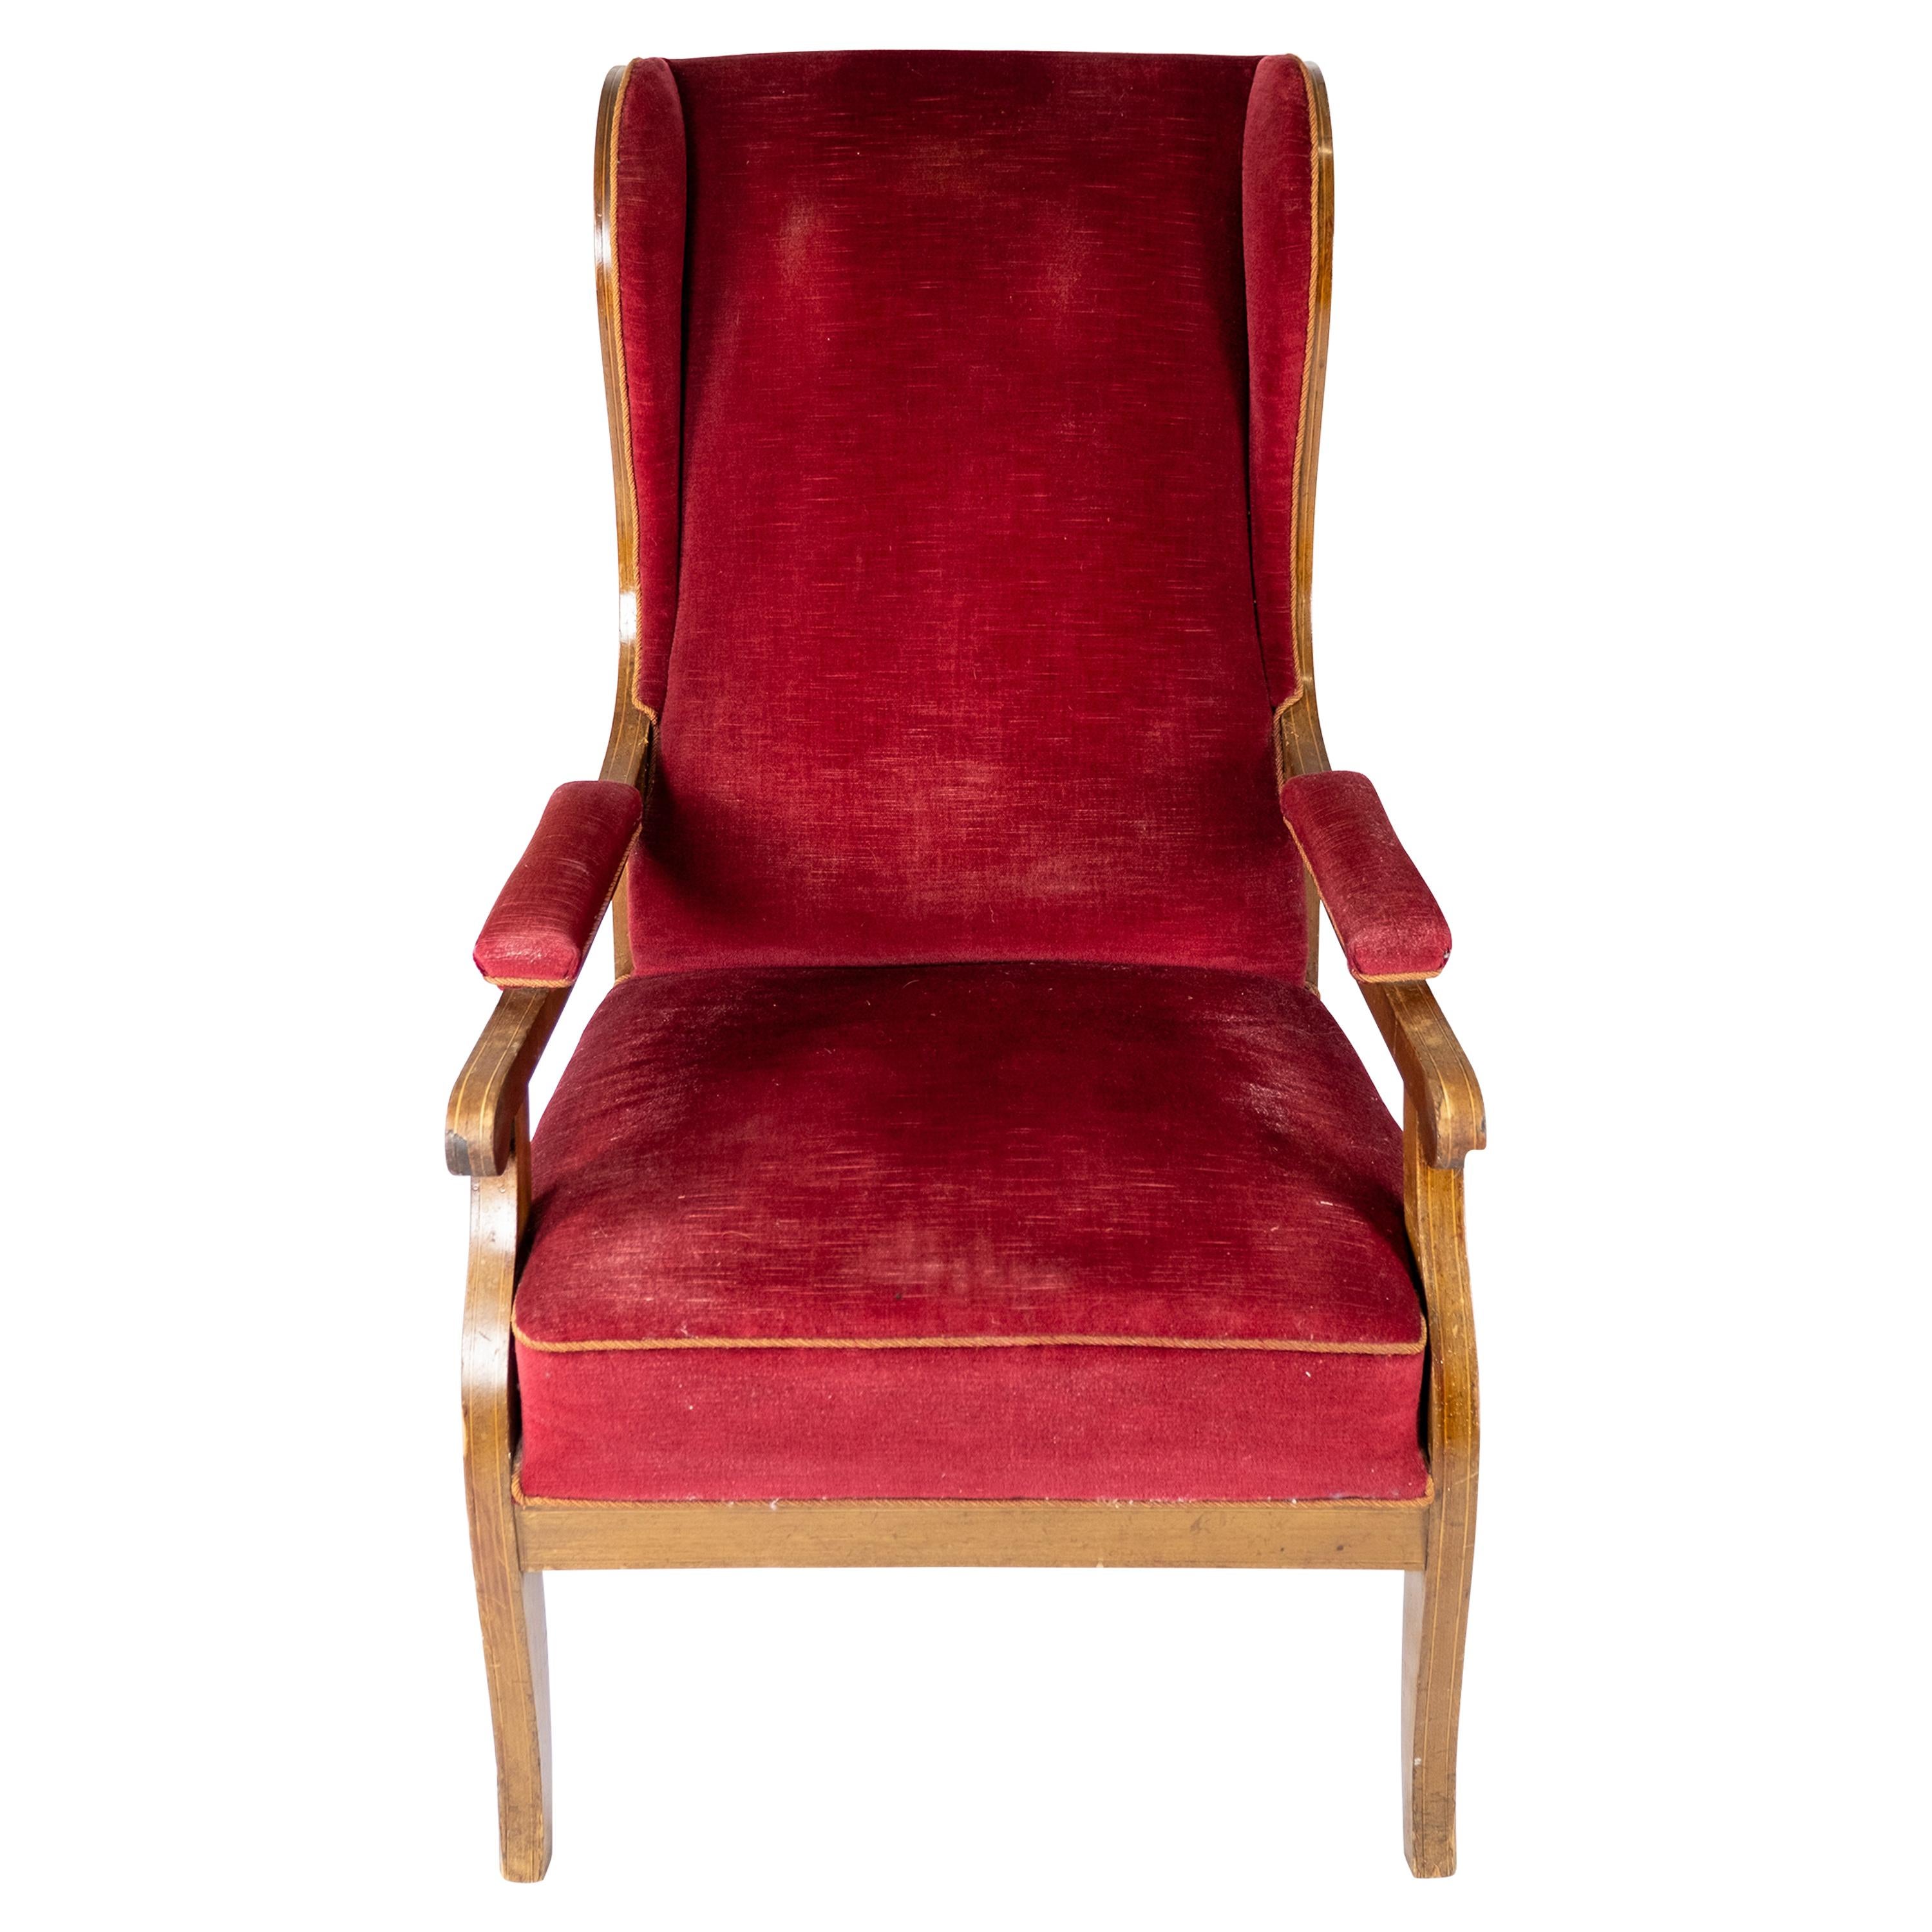 Sessel mit rotem Samt und Mahagoni gepolstert, entworfen von Frits Henningsen